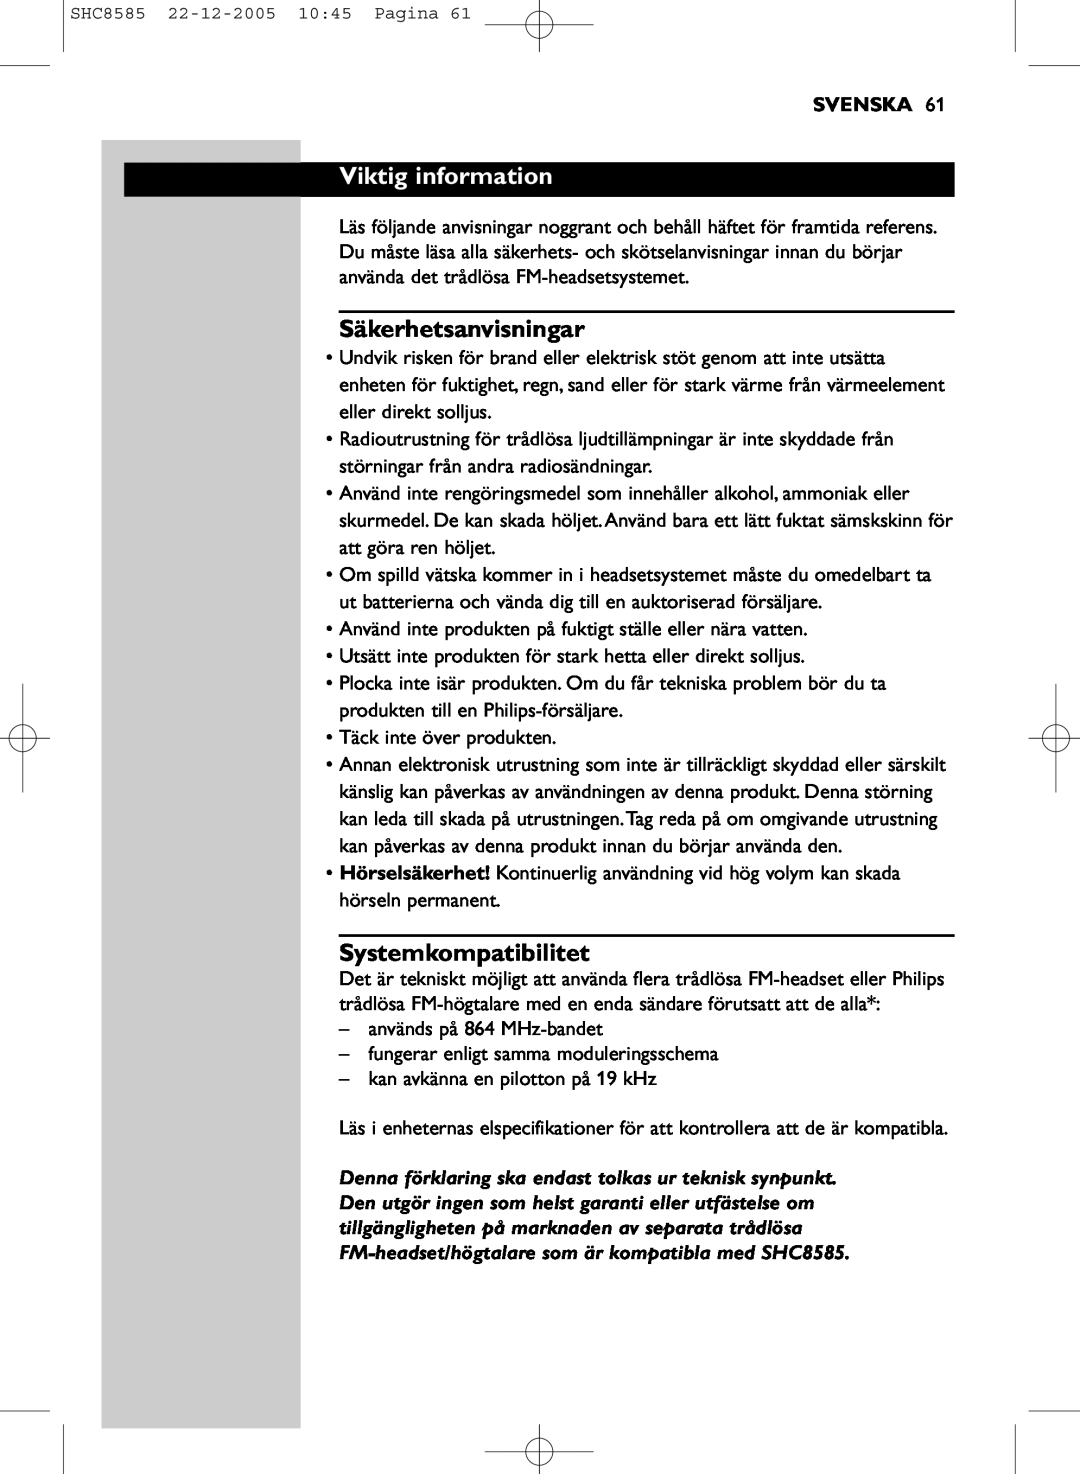 Philips SHC8585/05 manual Viktig information, Säkerhetsanvisningar, Systemkompatibilitet, Svenska 